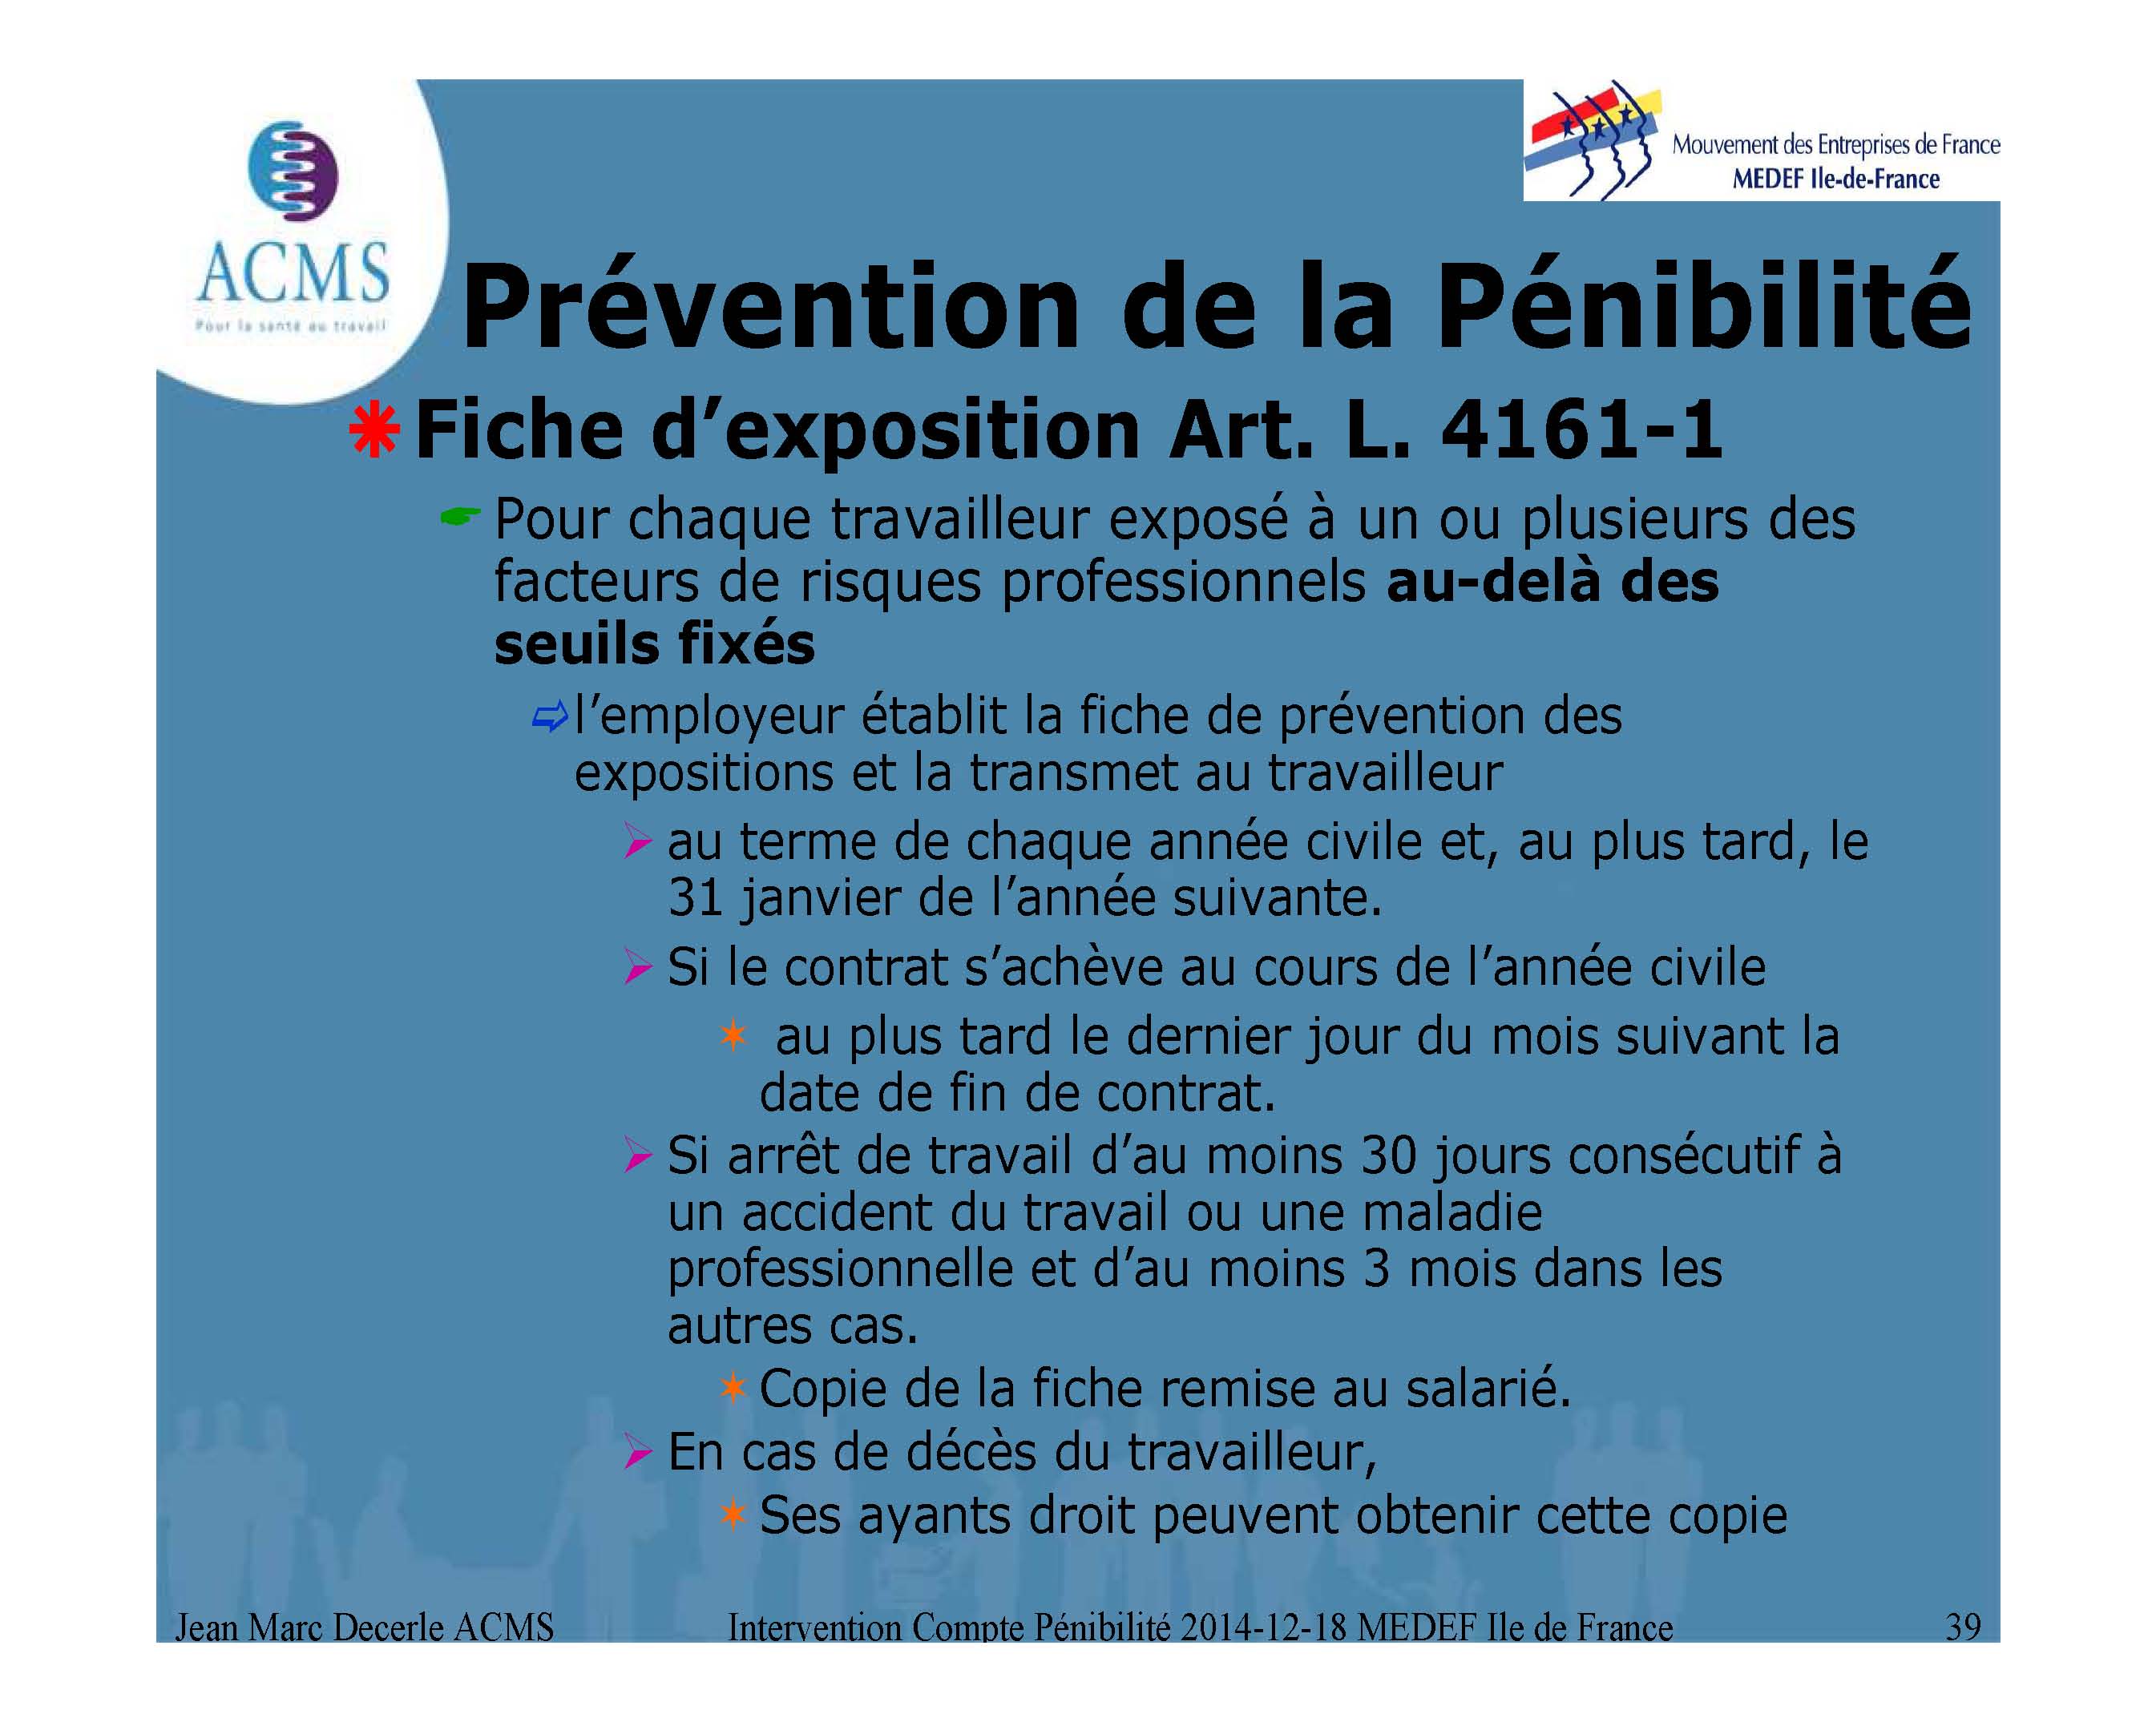 2014-12-18 Compte PÃ©nibilite MEDEF Ile de France_Page_39